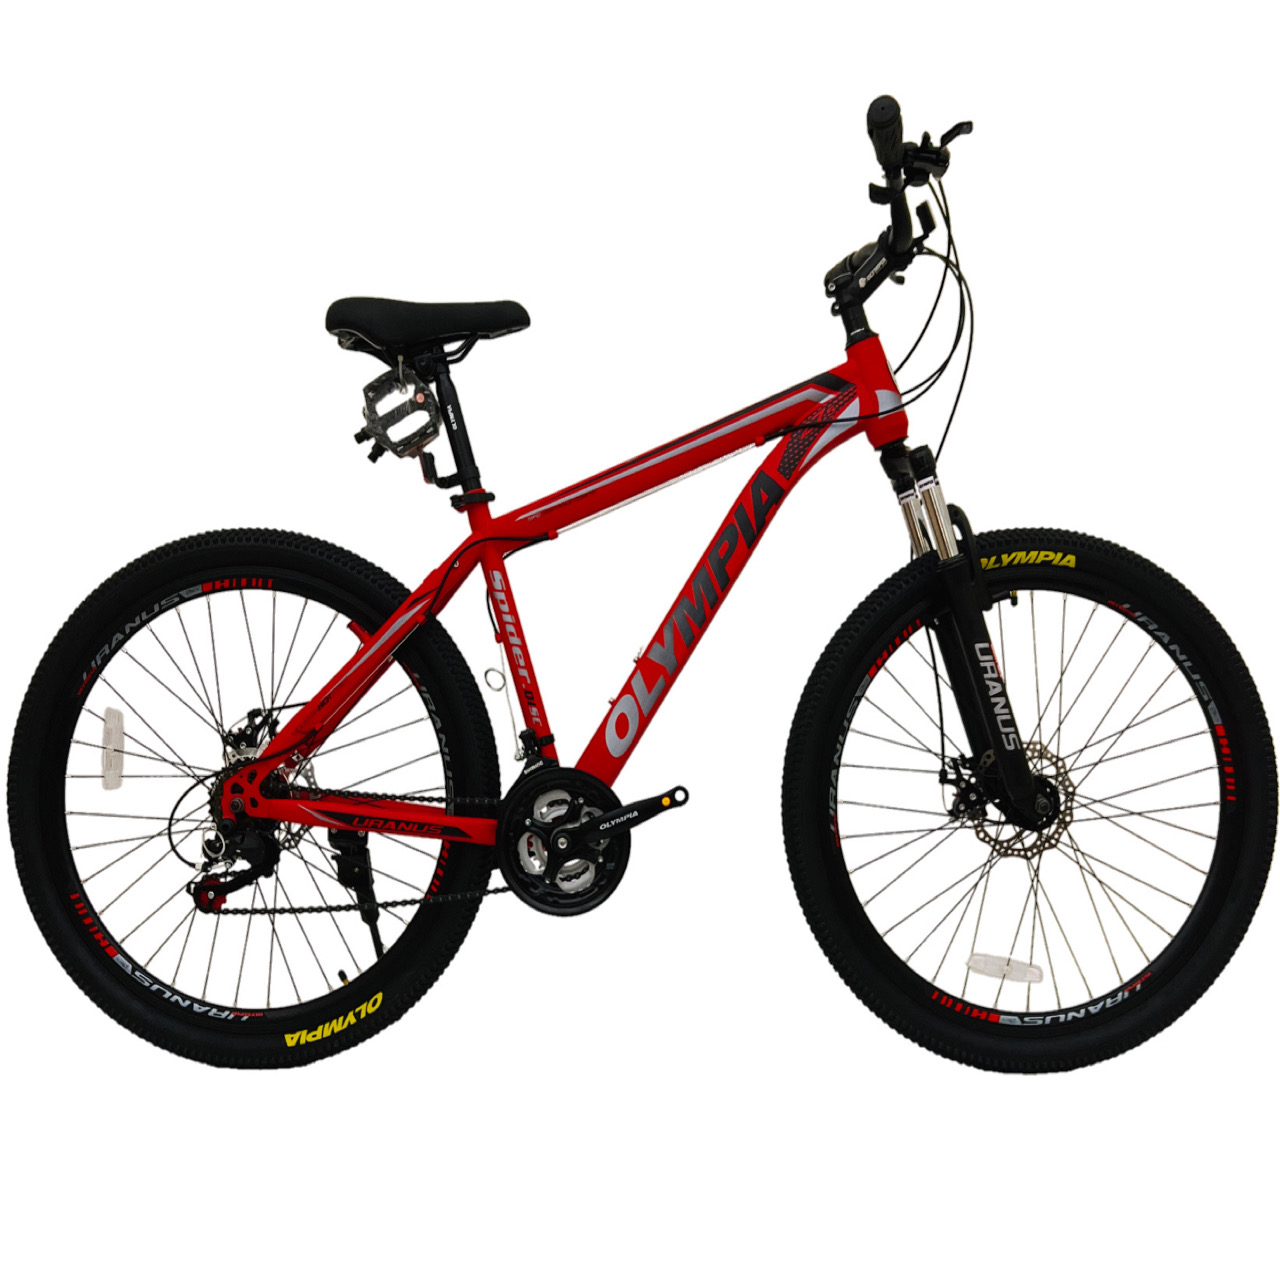 نکته خرید - قیمت روز دوچرخه کوهستان المپیا مدل SPIDER.01 کد دیسکی سایز 27.5 خرید